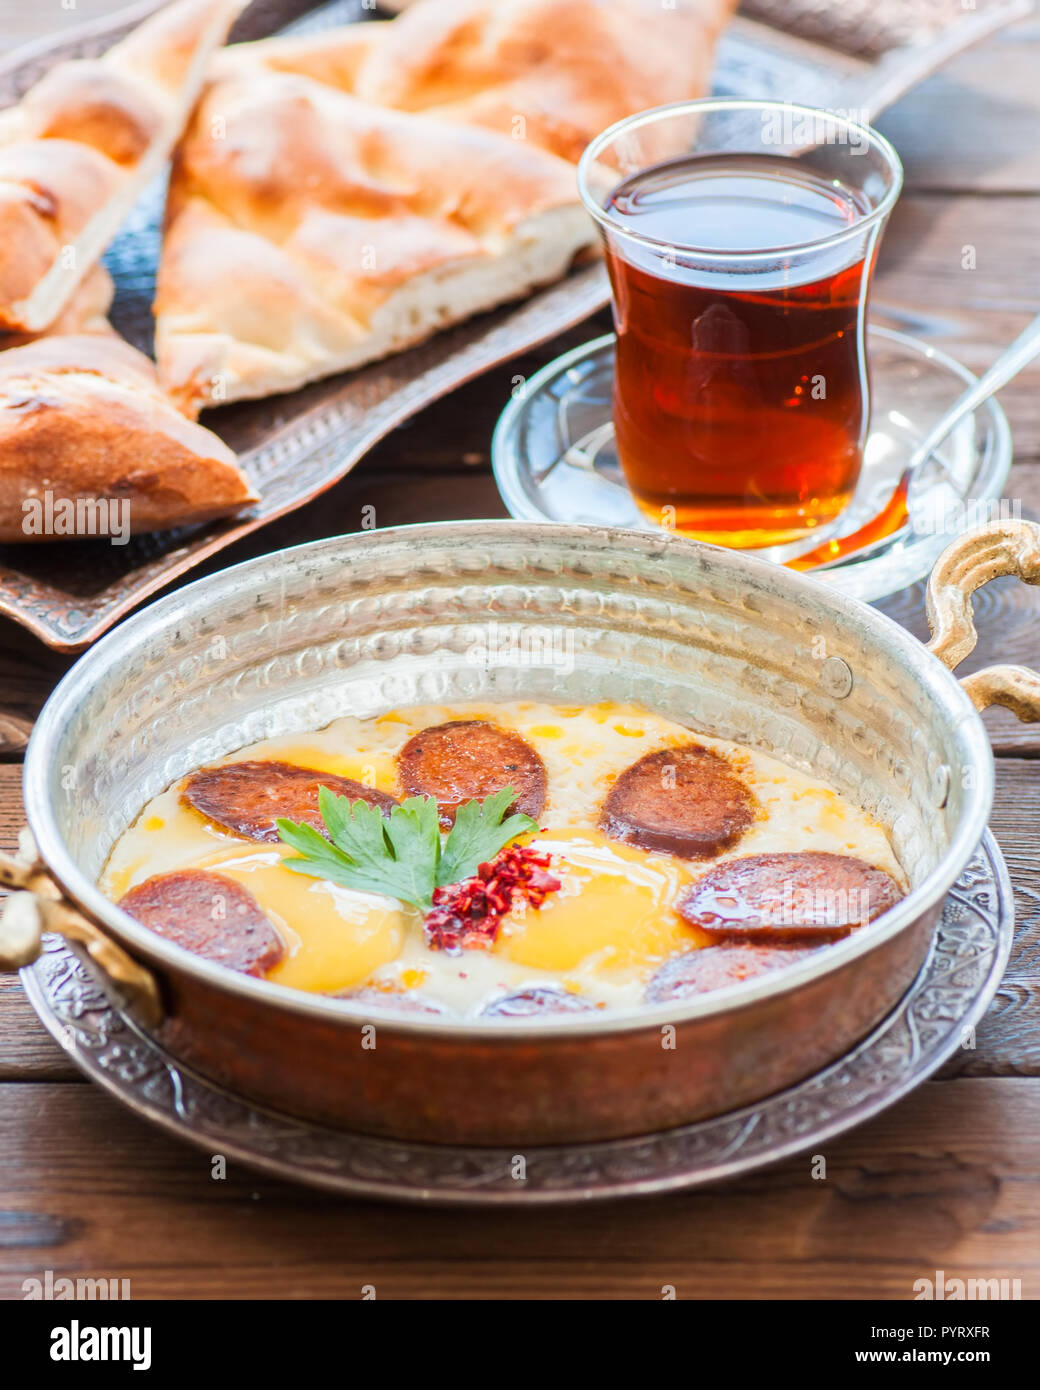 Türkisches Frühstück - Spiegeleier mit Würstchen (sucuk) und Gewürzen in einer Pfanne, Glas Tee auf einem hölzernen Hintergrund. Stockfoto